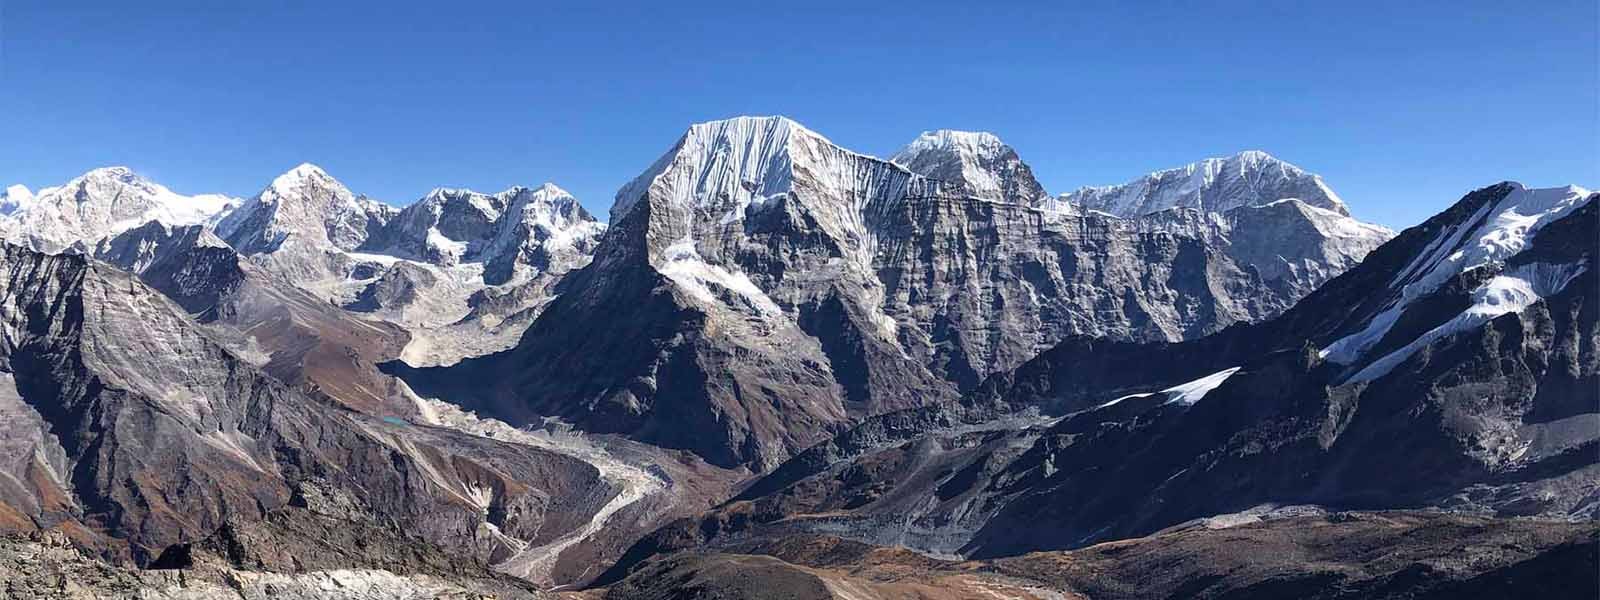 Rolwaling Himalayas- Cheki Go Peak Expedition